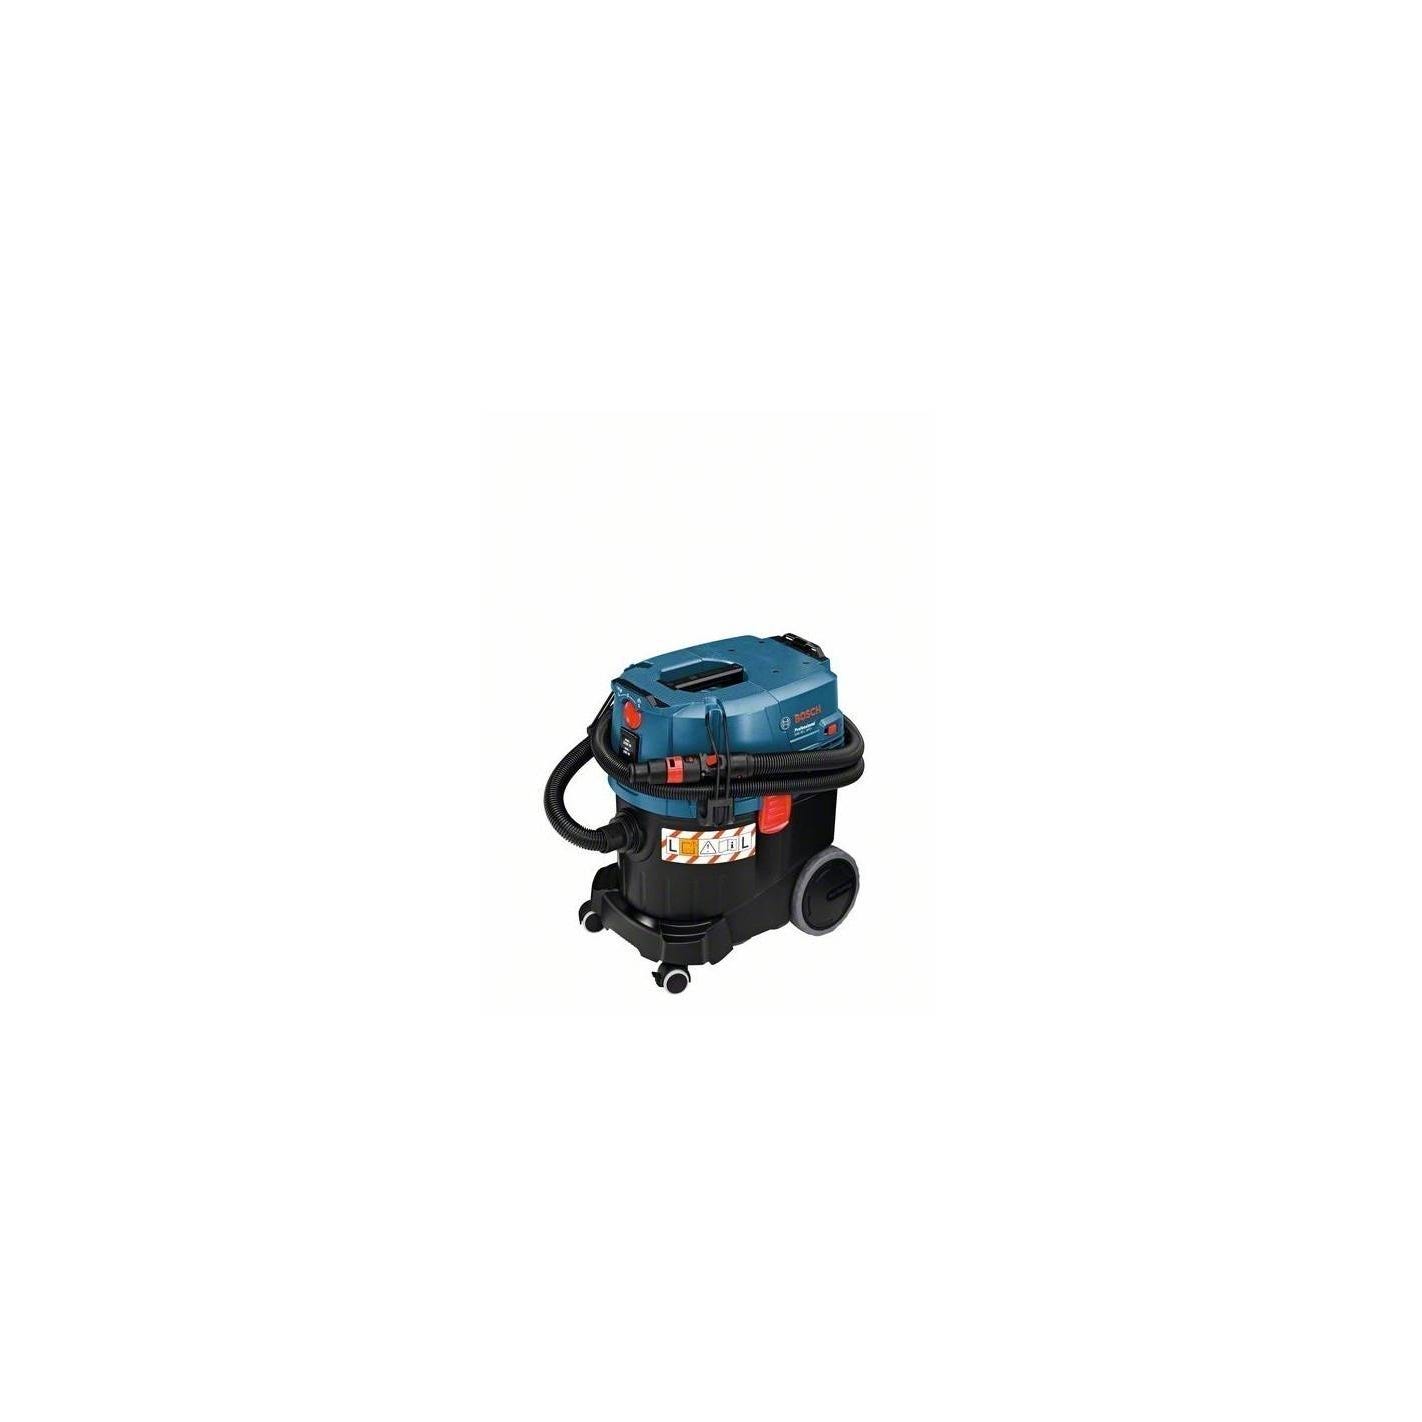 Aspirateur eau et poussière GAS 35 L SFC+ - Bosch 0